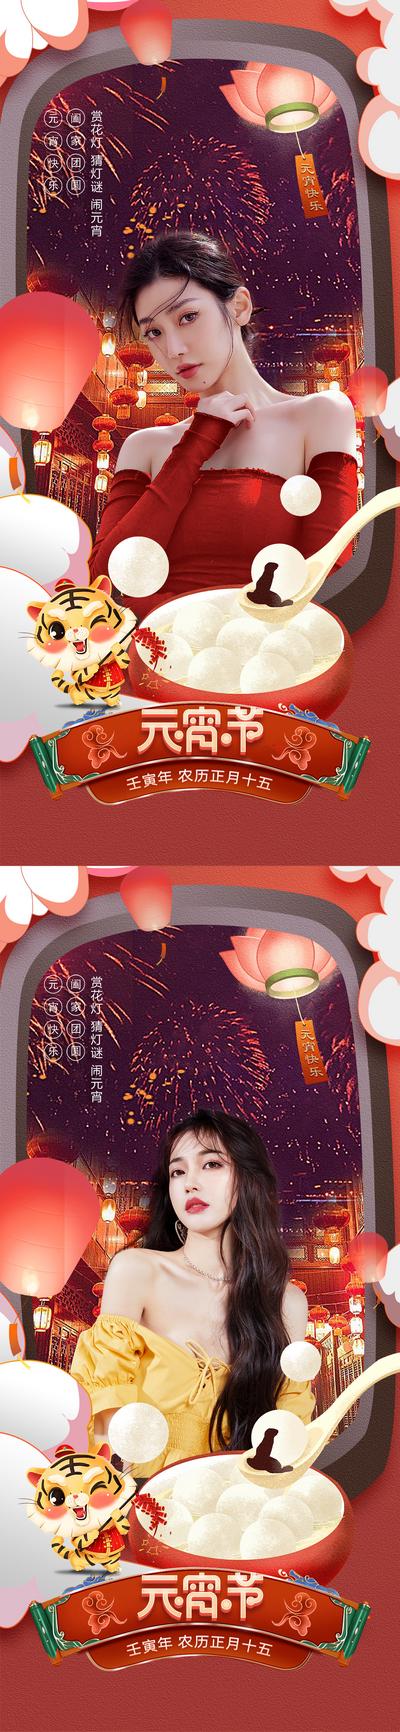 南门网 海报 中国传统节日 元宵节 医美 人物 促销 系列 红金